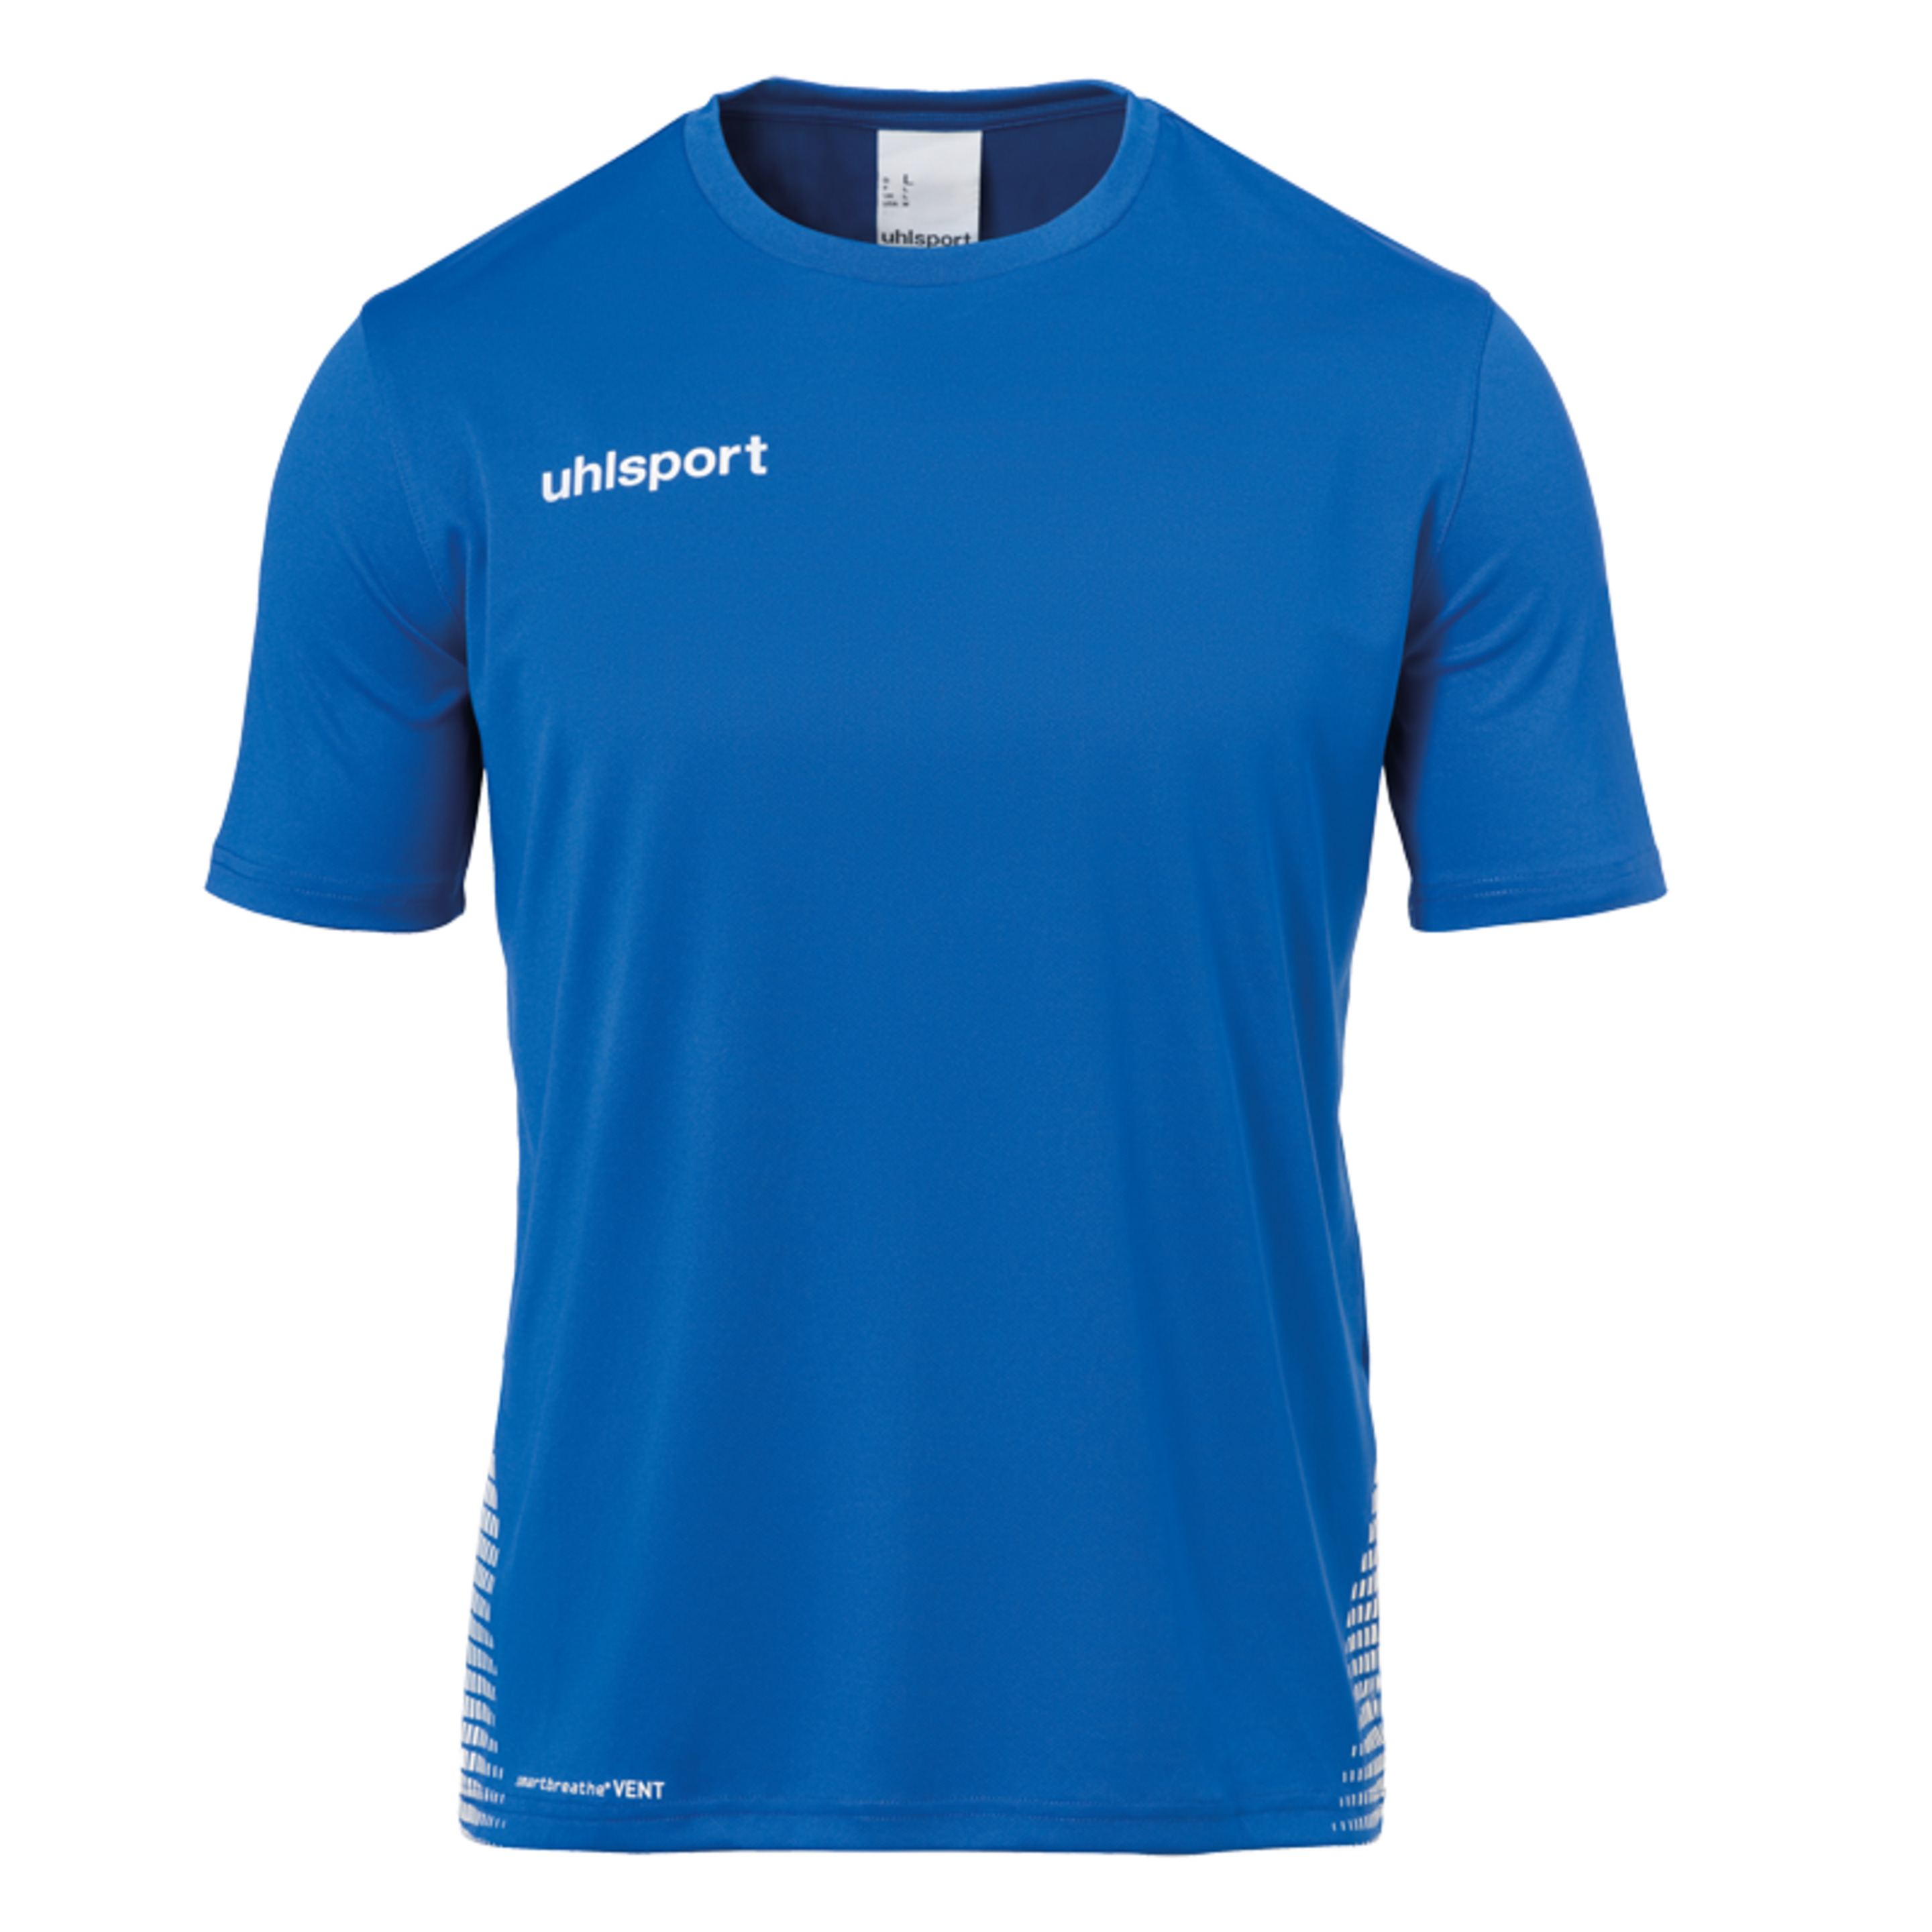 Score Training T-shirt Azur/blanco Uhlsport